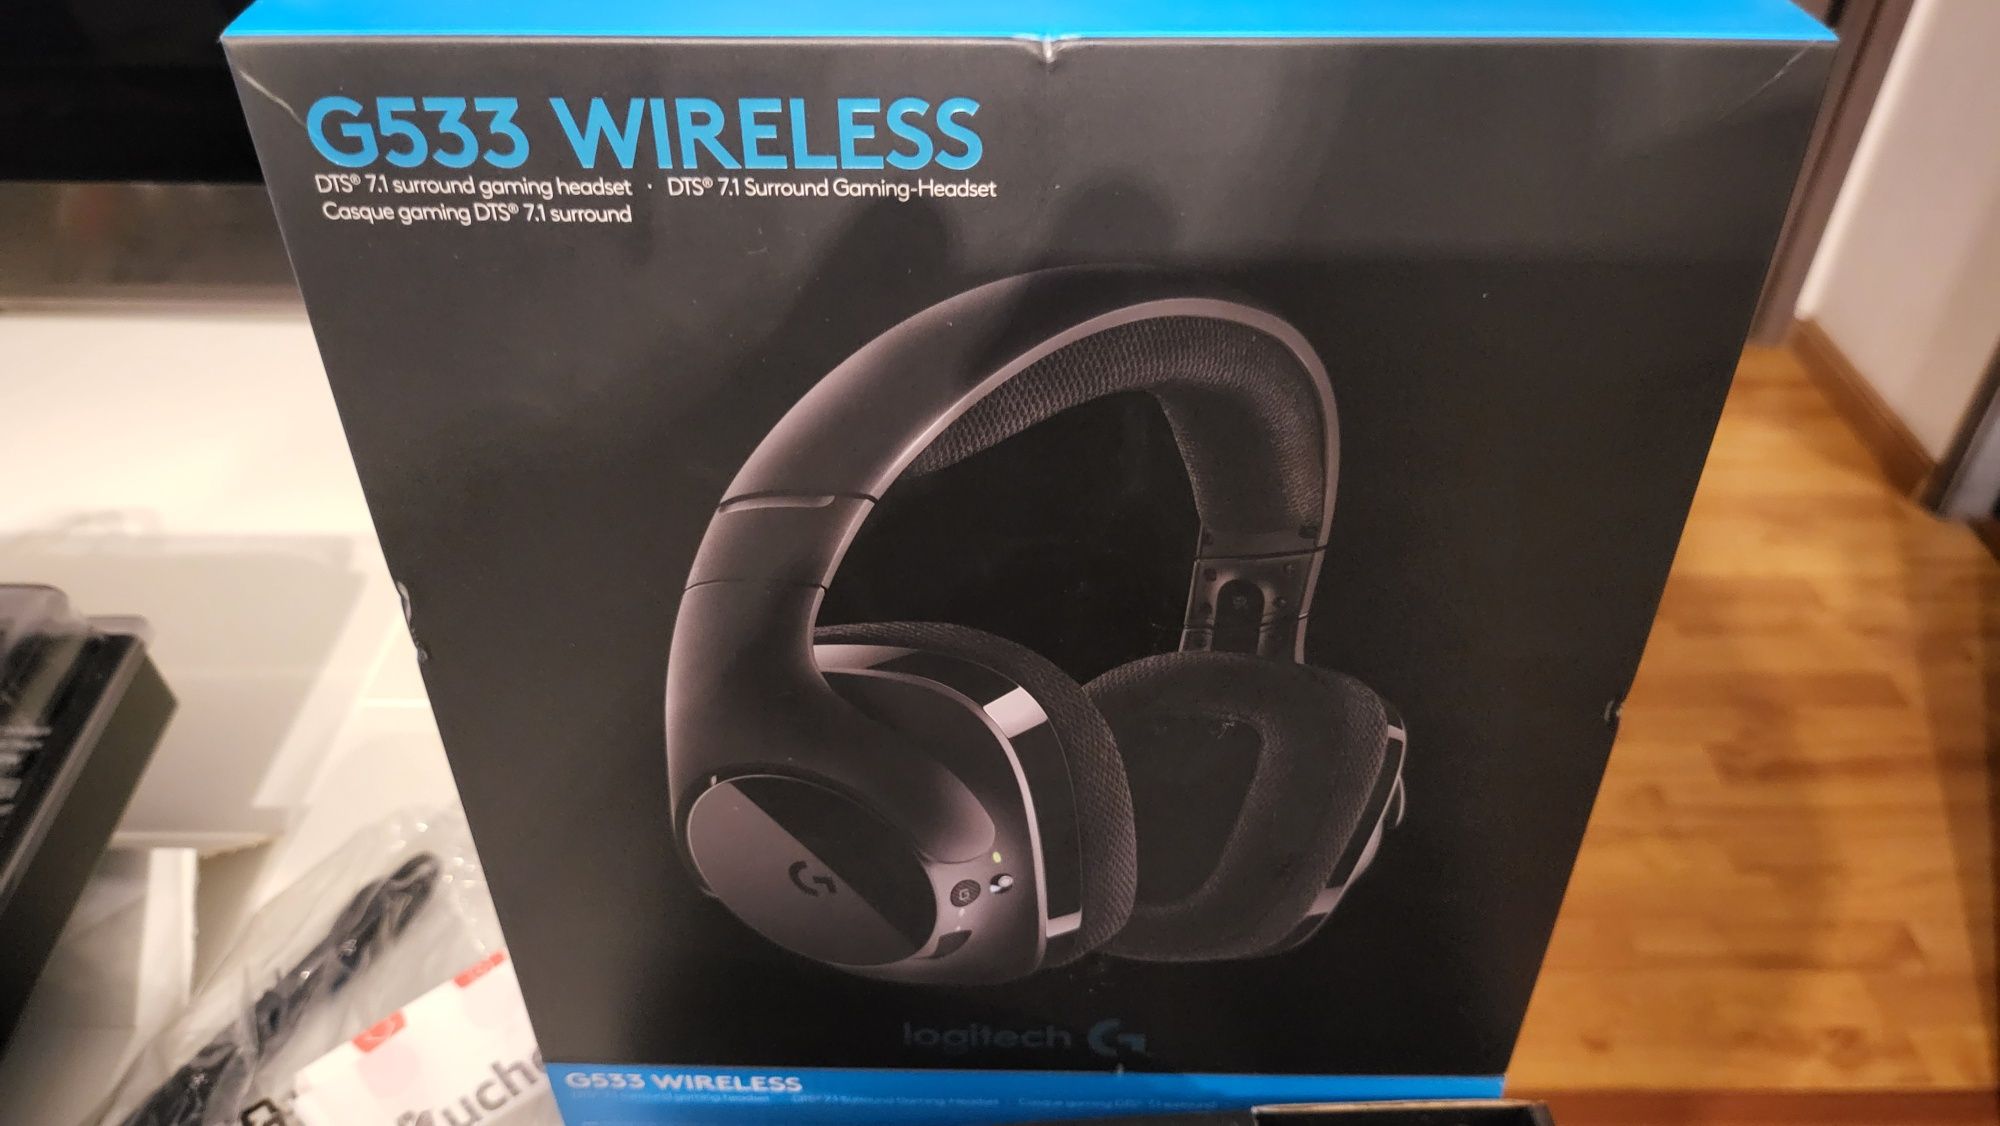 Headphones / auscultadores Logitech G533 Wireless